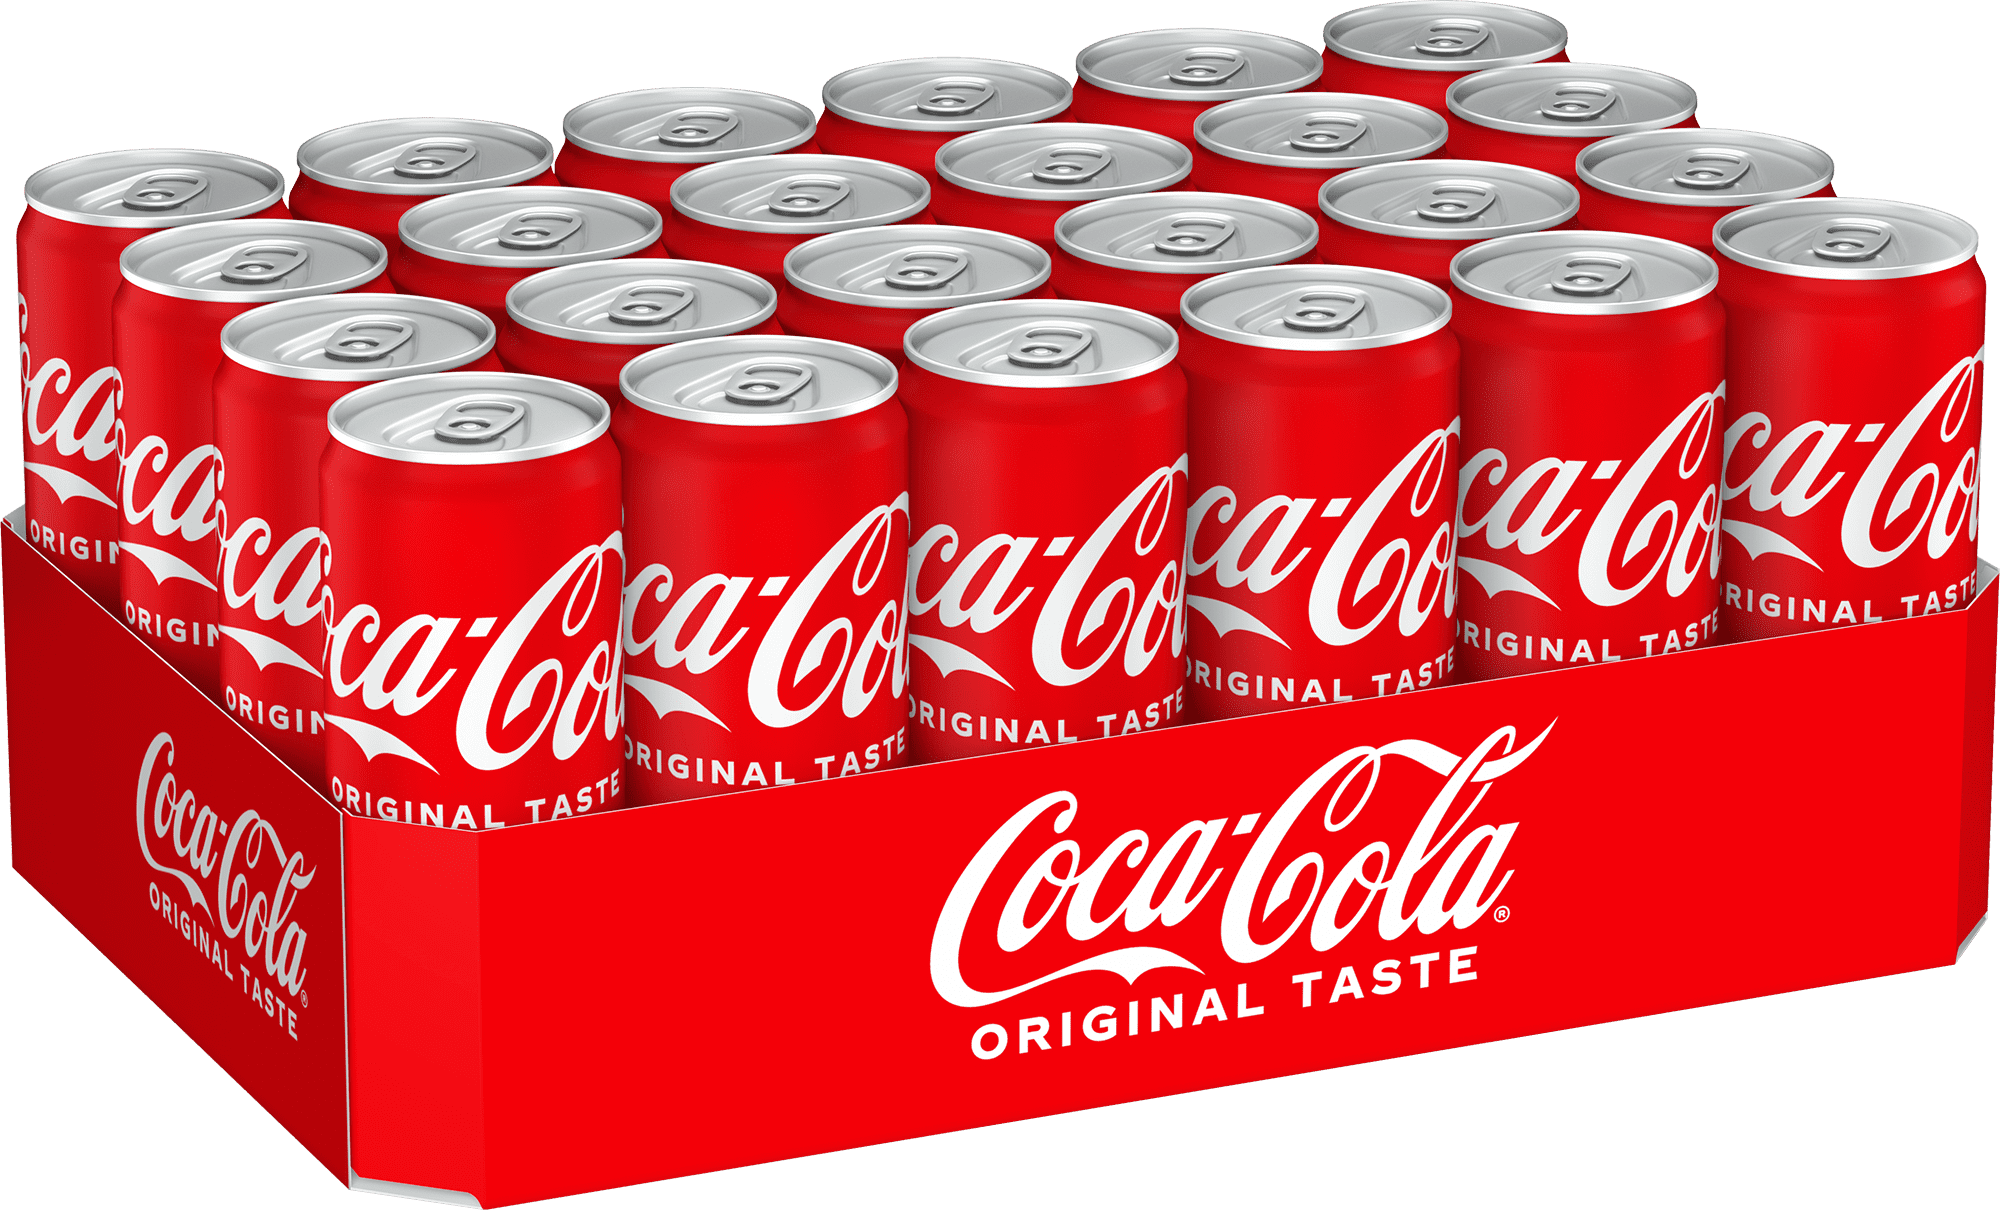 Coca-Cola Dose online bestellen